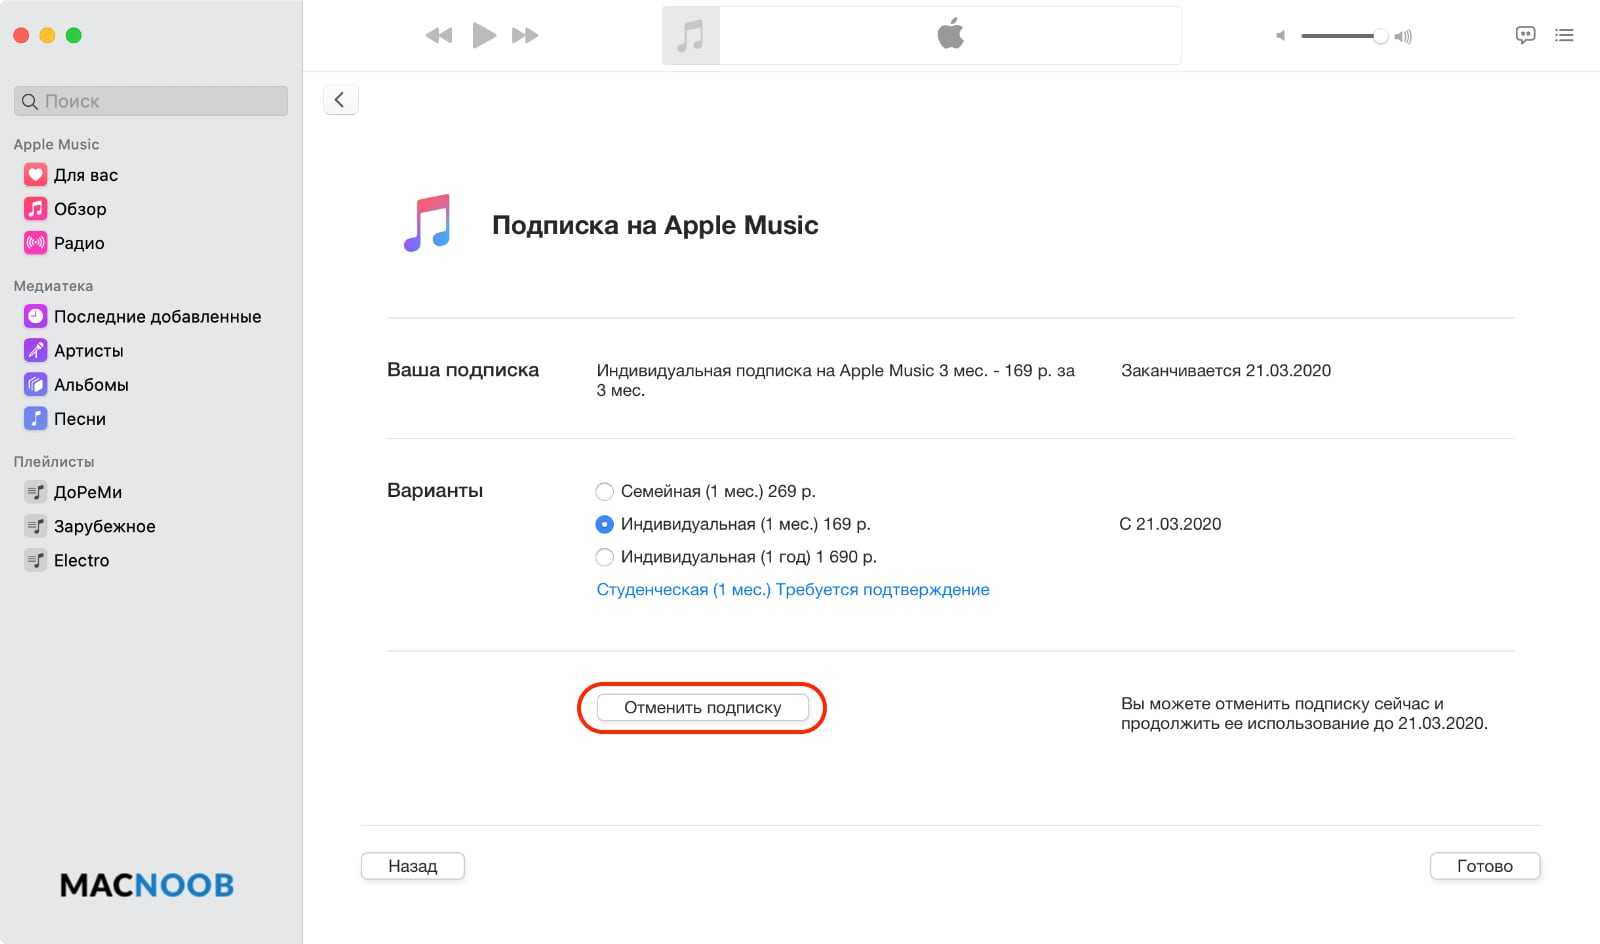 Как отменить подписку на apple music с iphone, компьютера windows и macbook